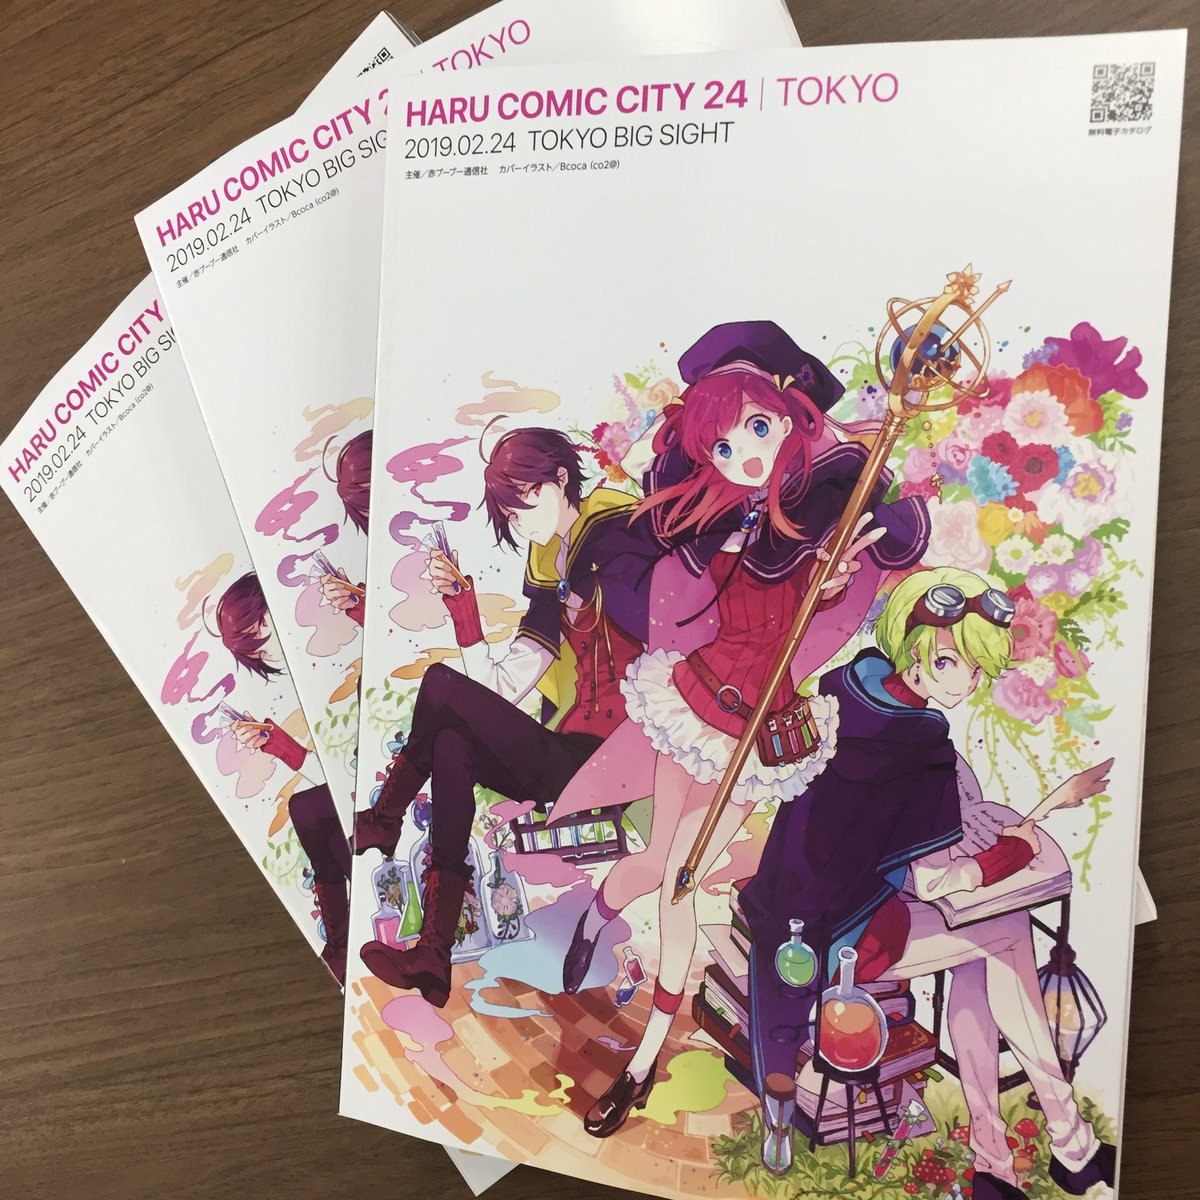 赤ブーブー通信社 Twitter પર 今週末開催 Haru Comic City 24 東京のパンフレットはこちら 本イベントは一般パンフレット Or 入場券購入制のイベントです 1500円 1300円